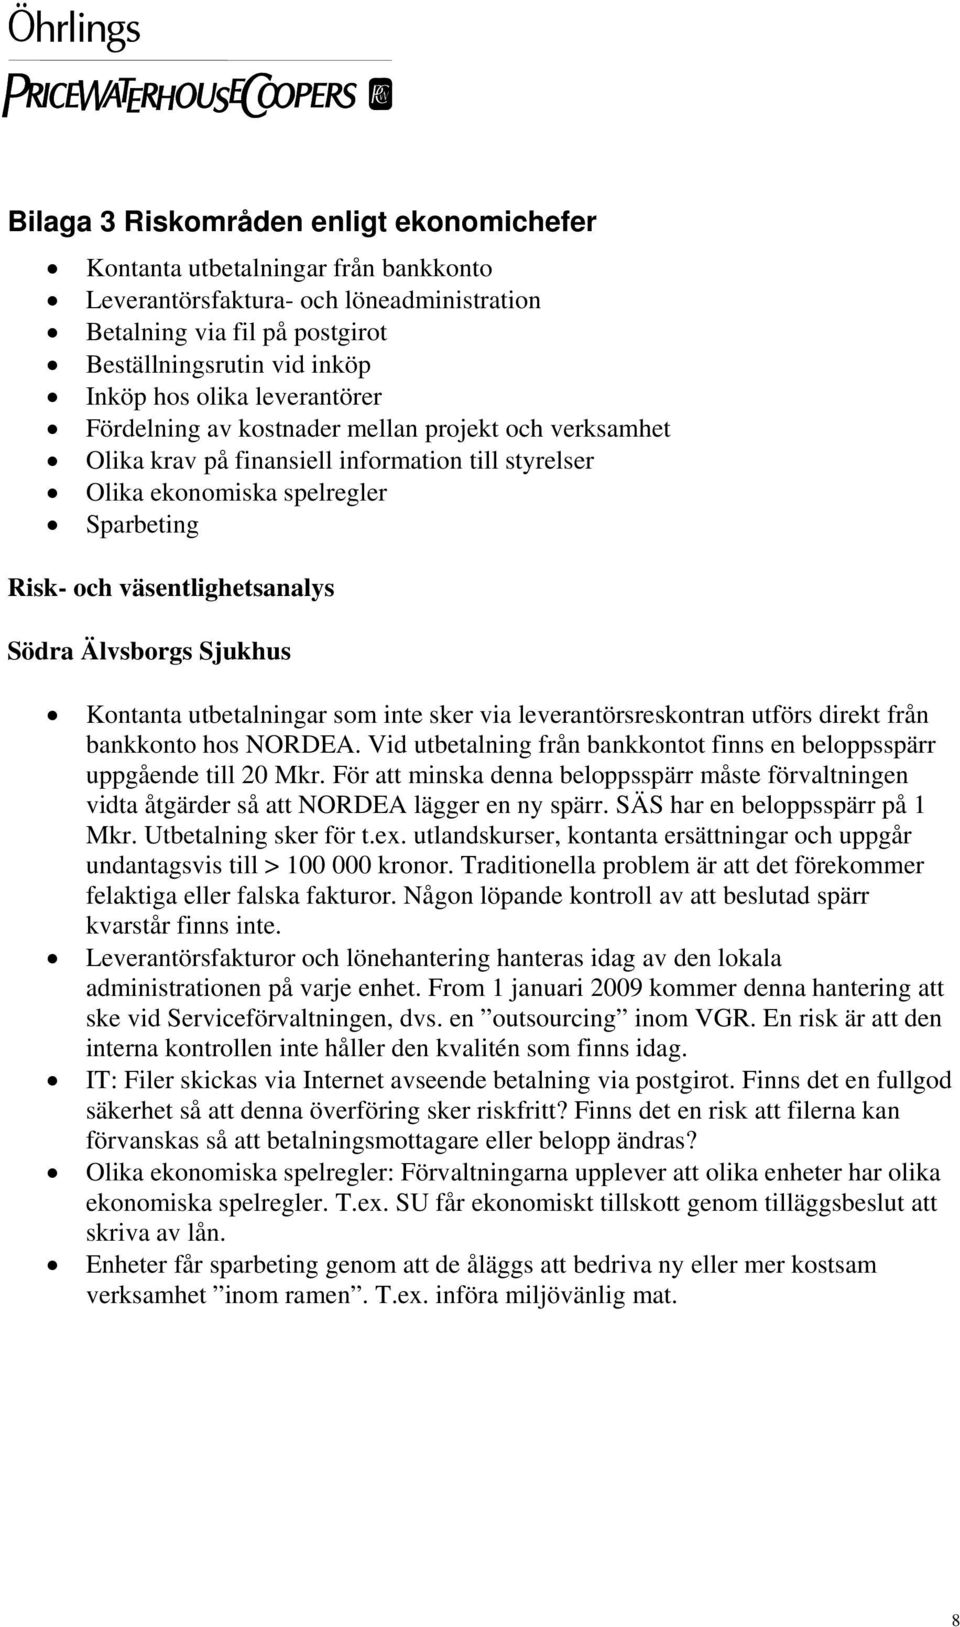 Älvsborgs Sjukhus Kontanta utbetalningar som inte sker via leverantörsreskontran utförs direkt från bankkonto hos NORDEA. Vid utbetalning från bankkontot finns en beloppsspärr uppgående till 20 Mkr.